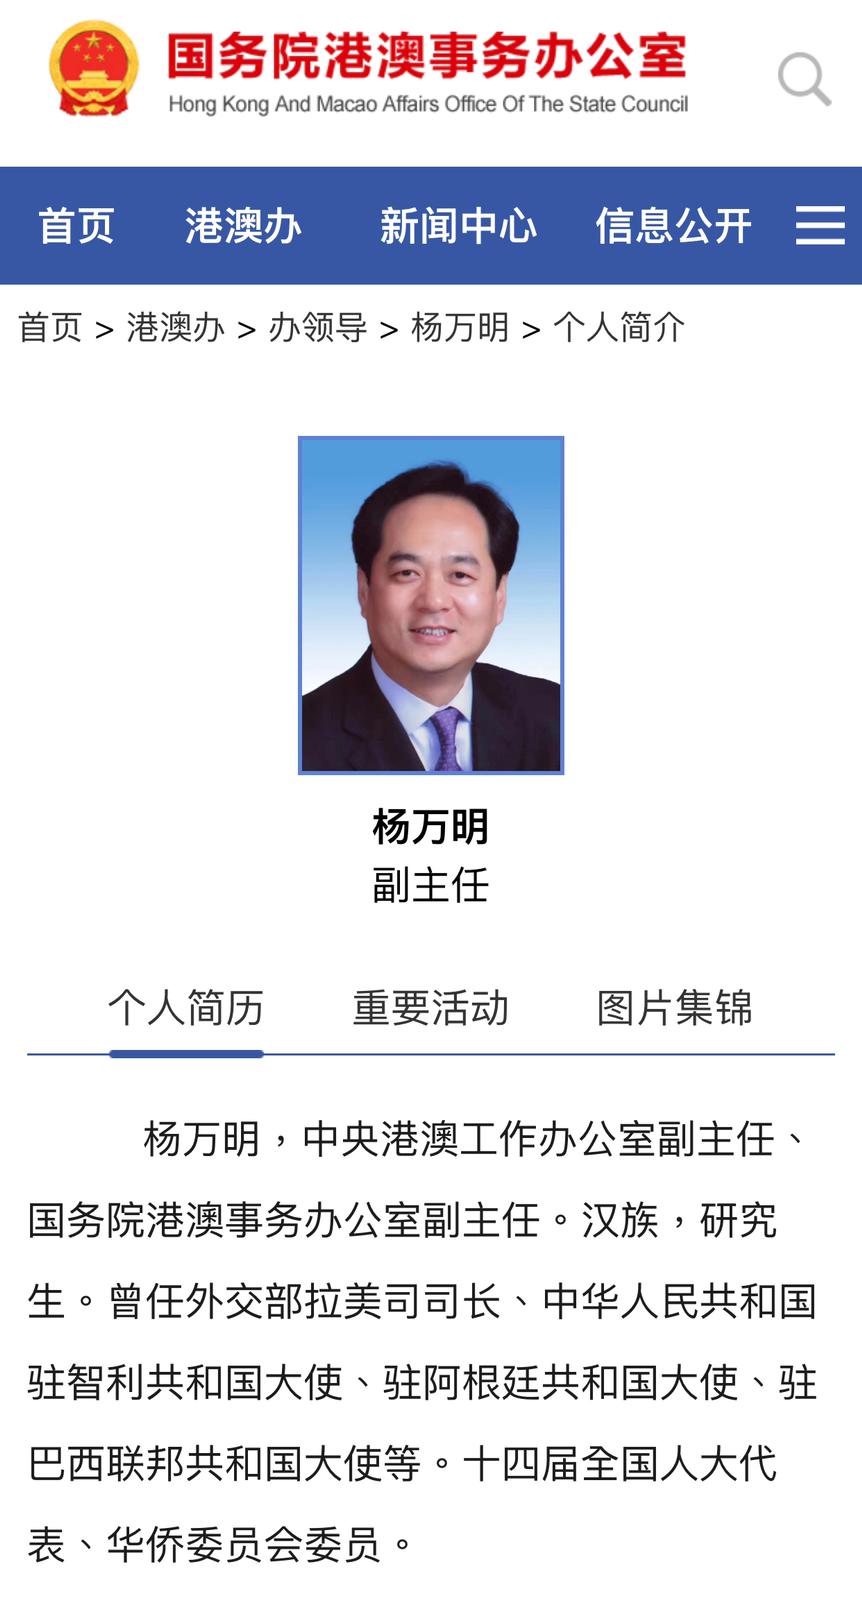 目前港澳办的官方网页仍有杨万明的介绍。